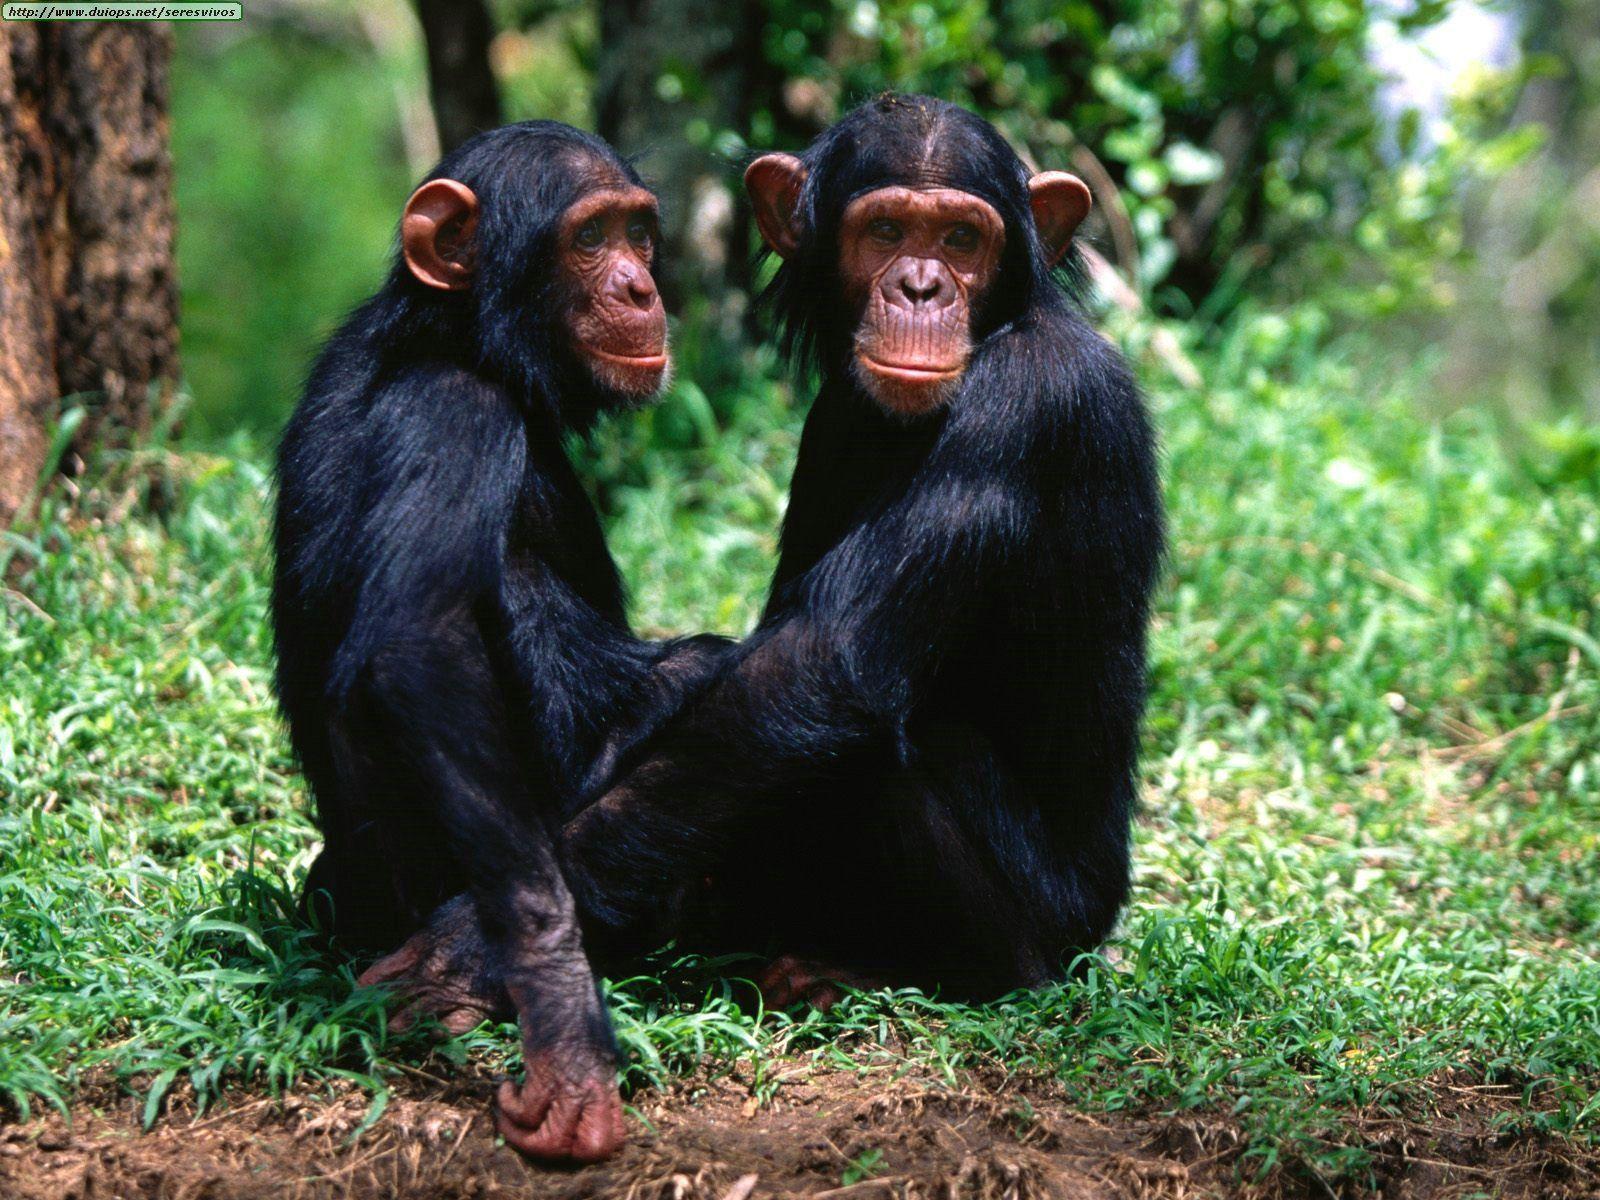 Chimpanzee Wallpaper Photo